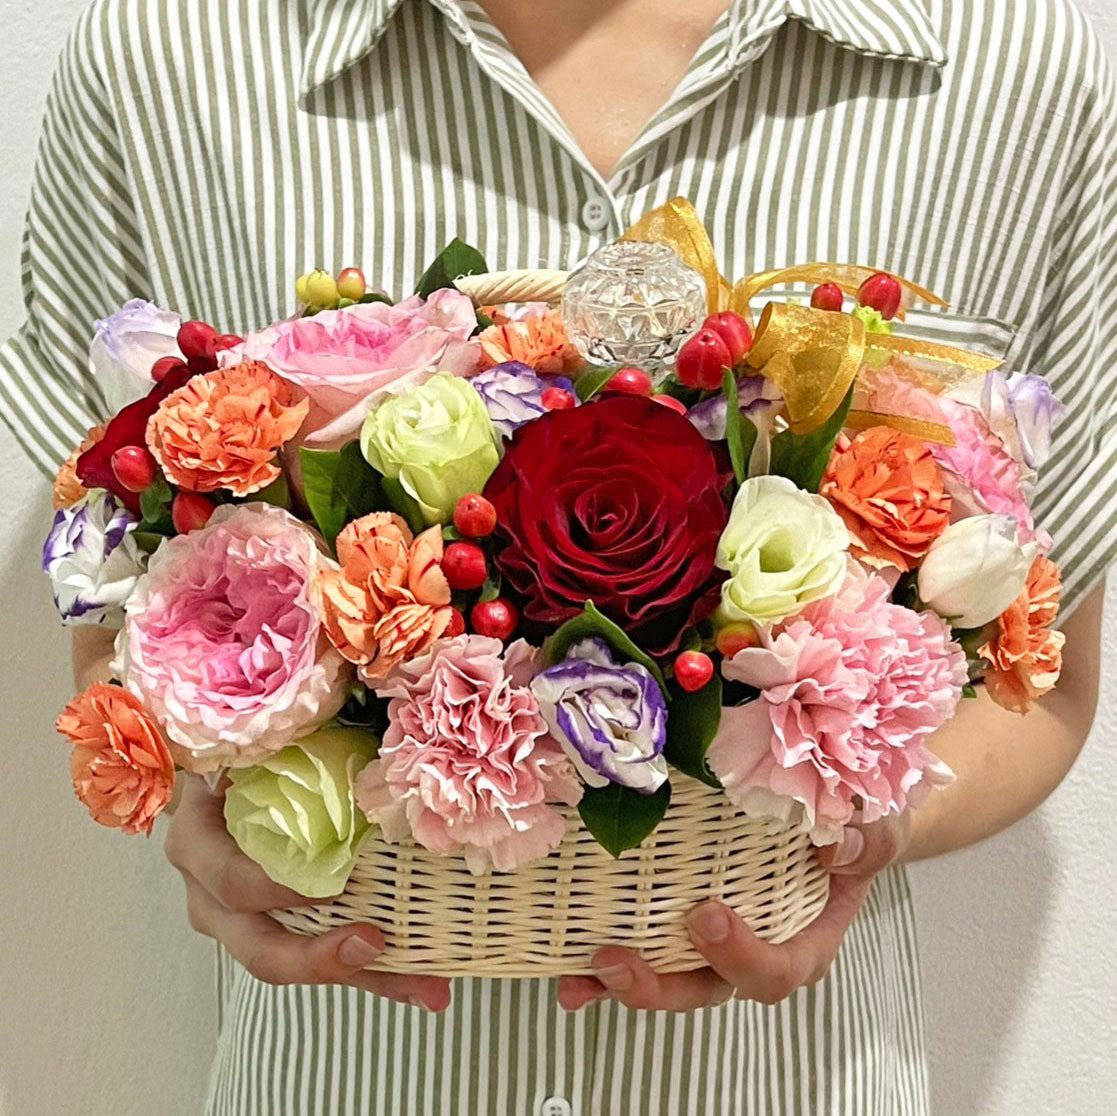 กระเช้าดอกไม้พร้อมน้ำอบแด่คุณแม่ที่เคารพรัก Prosperous Blooming